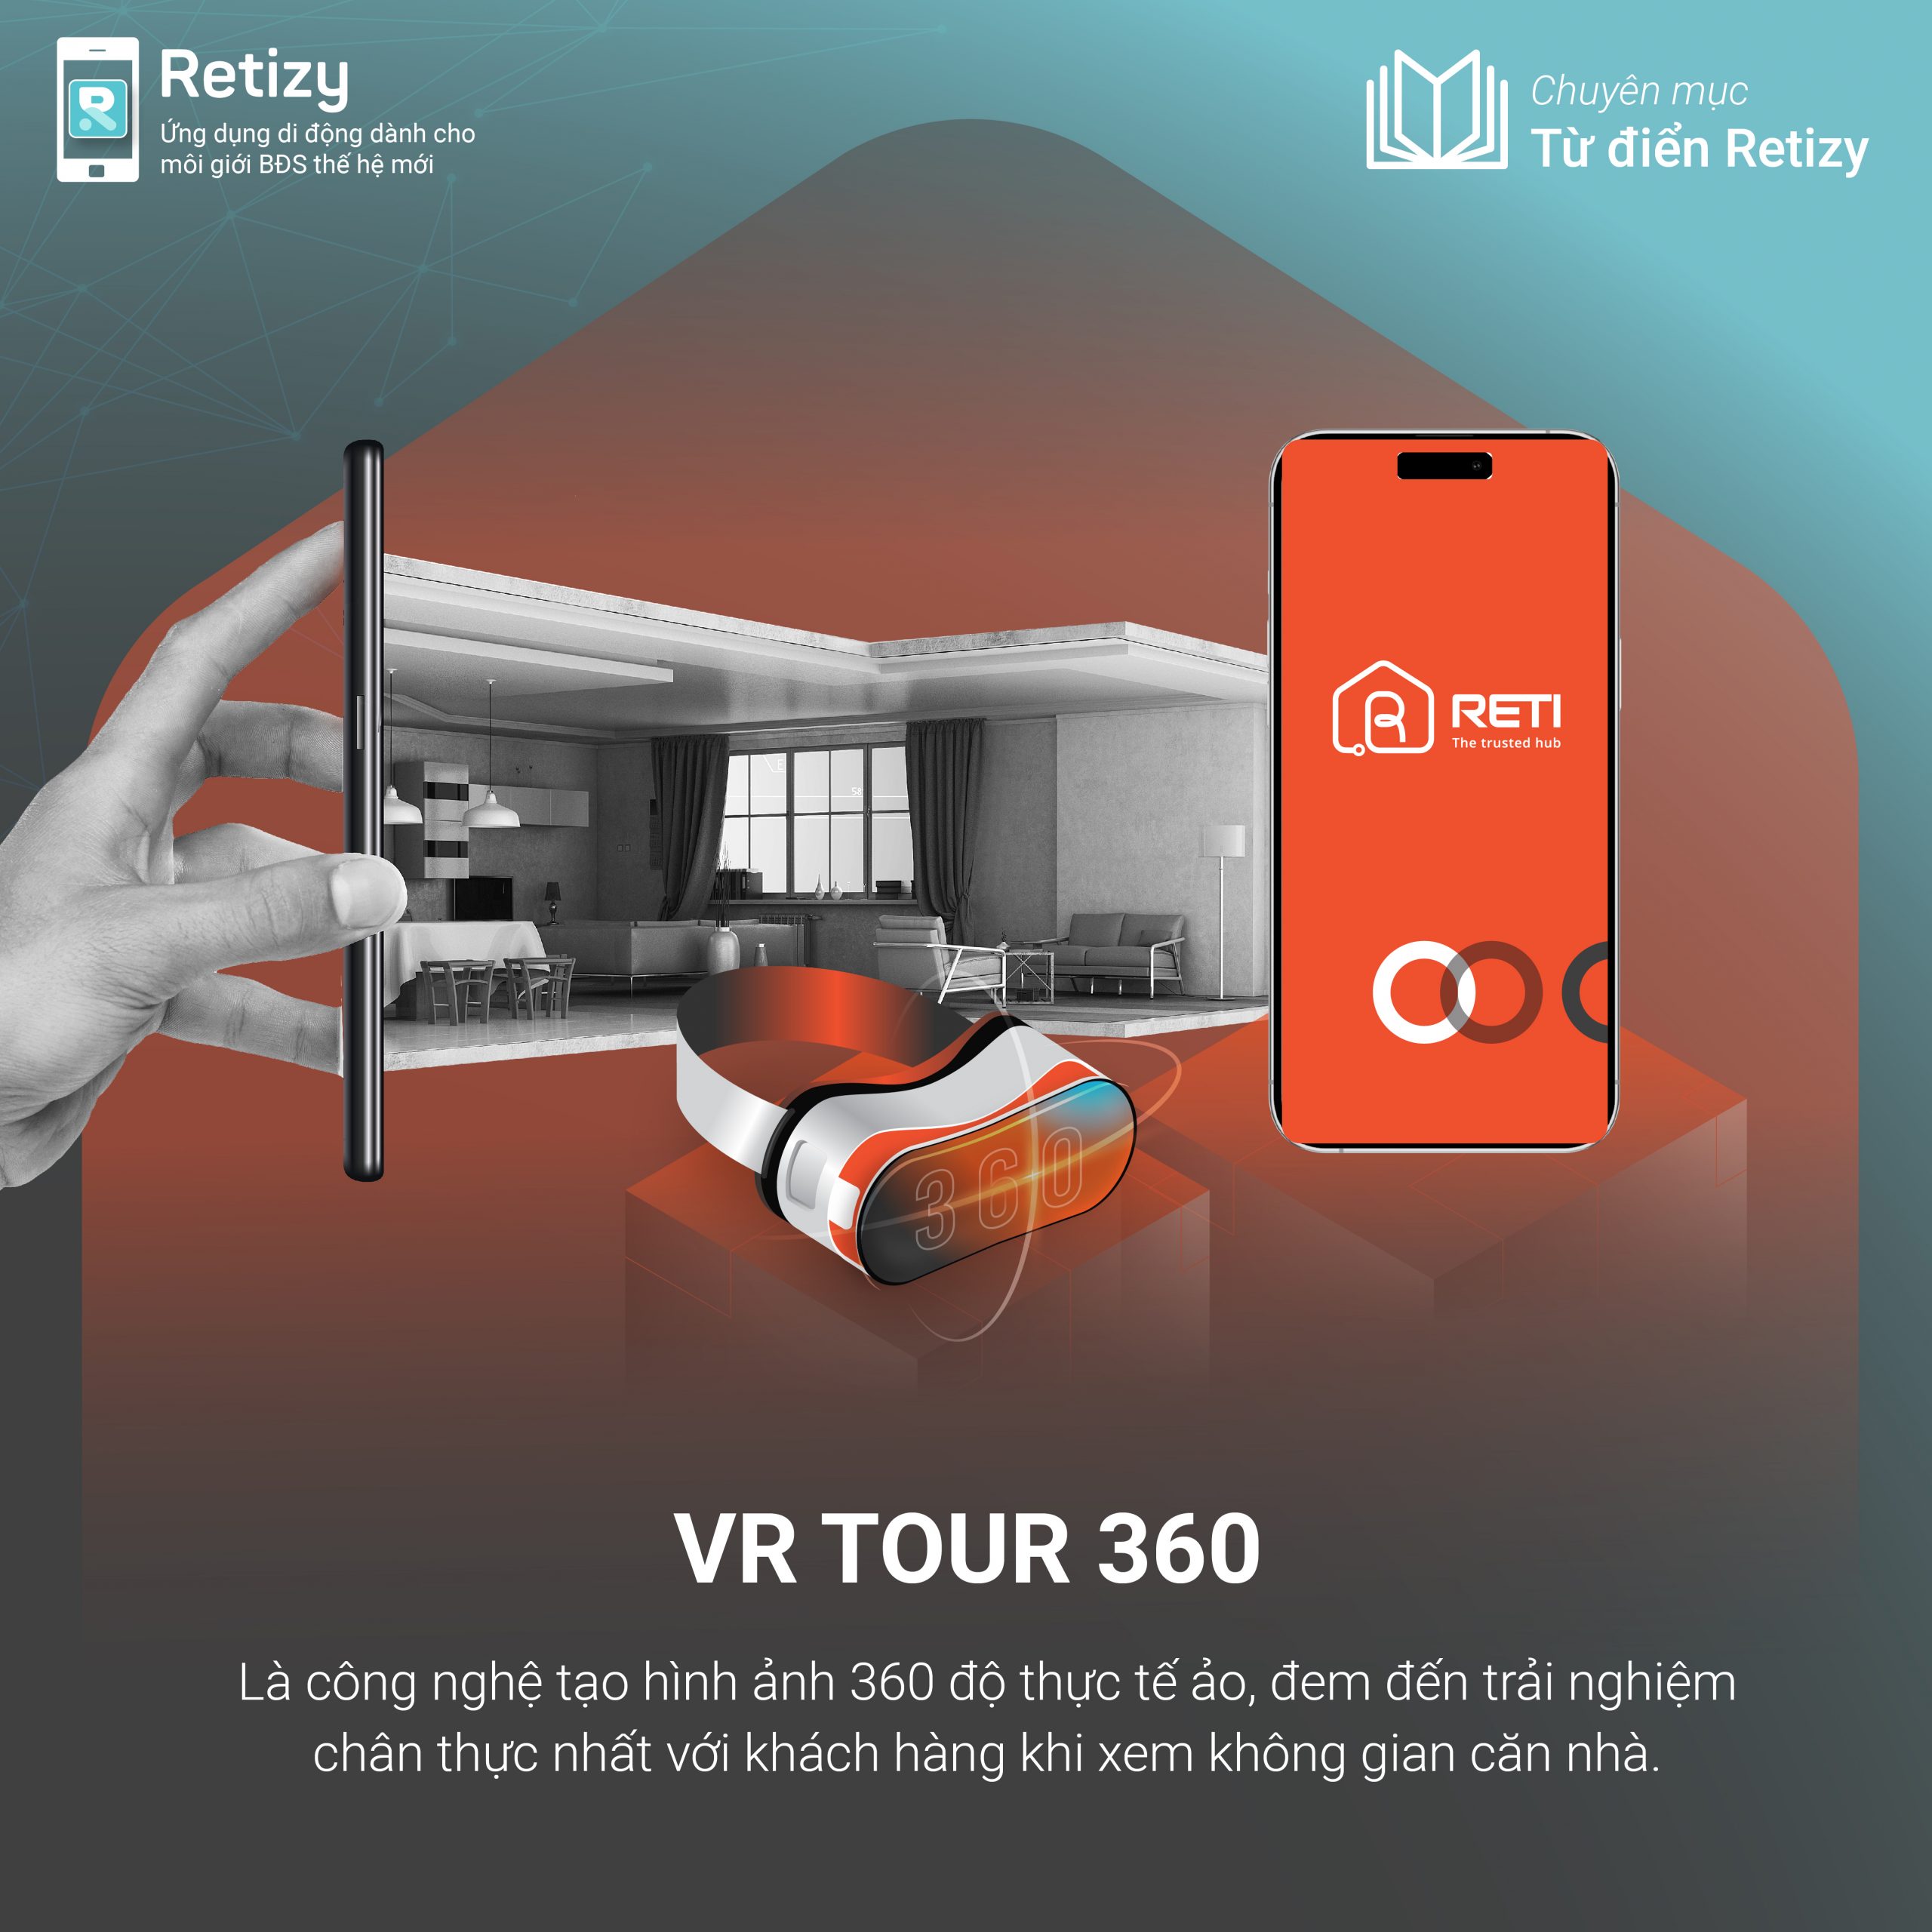 Dịch vụ VR 360 là gì? Ứng dụng của VR trong ngành bất động sản hiện nay 1